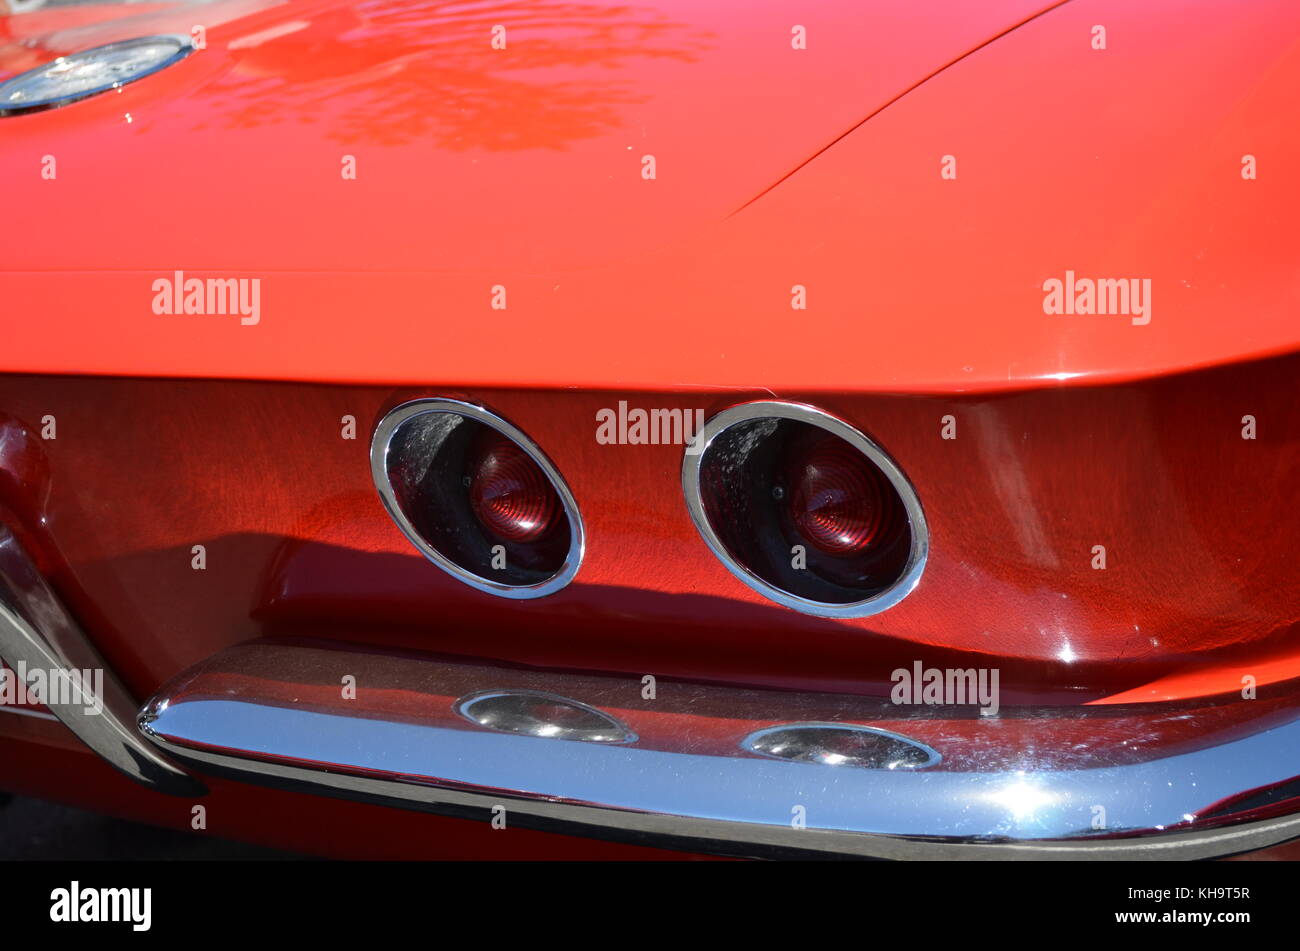 Chevrolet Corvette Stingray am Auto genommen werden, zeigen die Eingang New South Wales nsw Australien Stockfoto